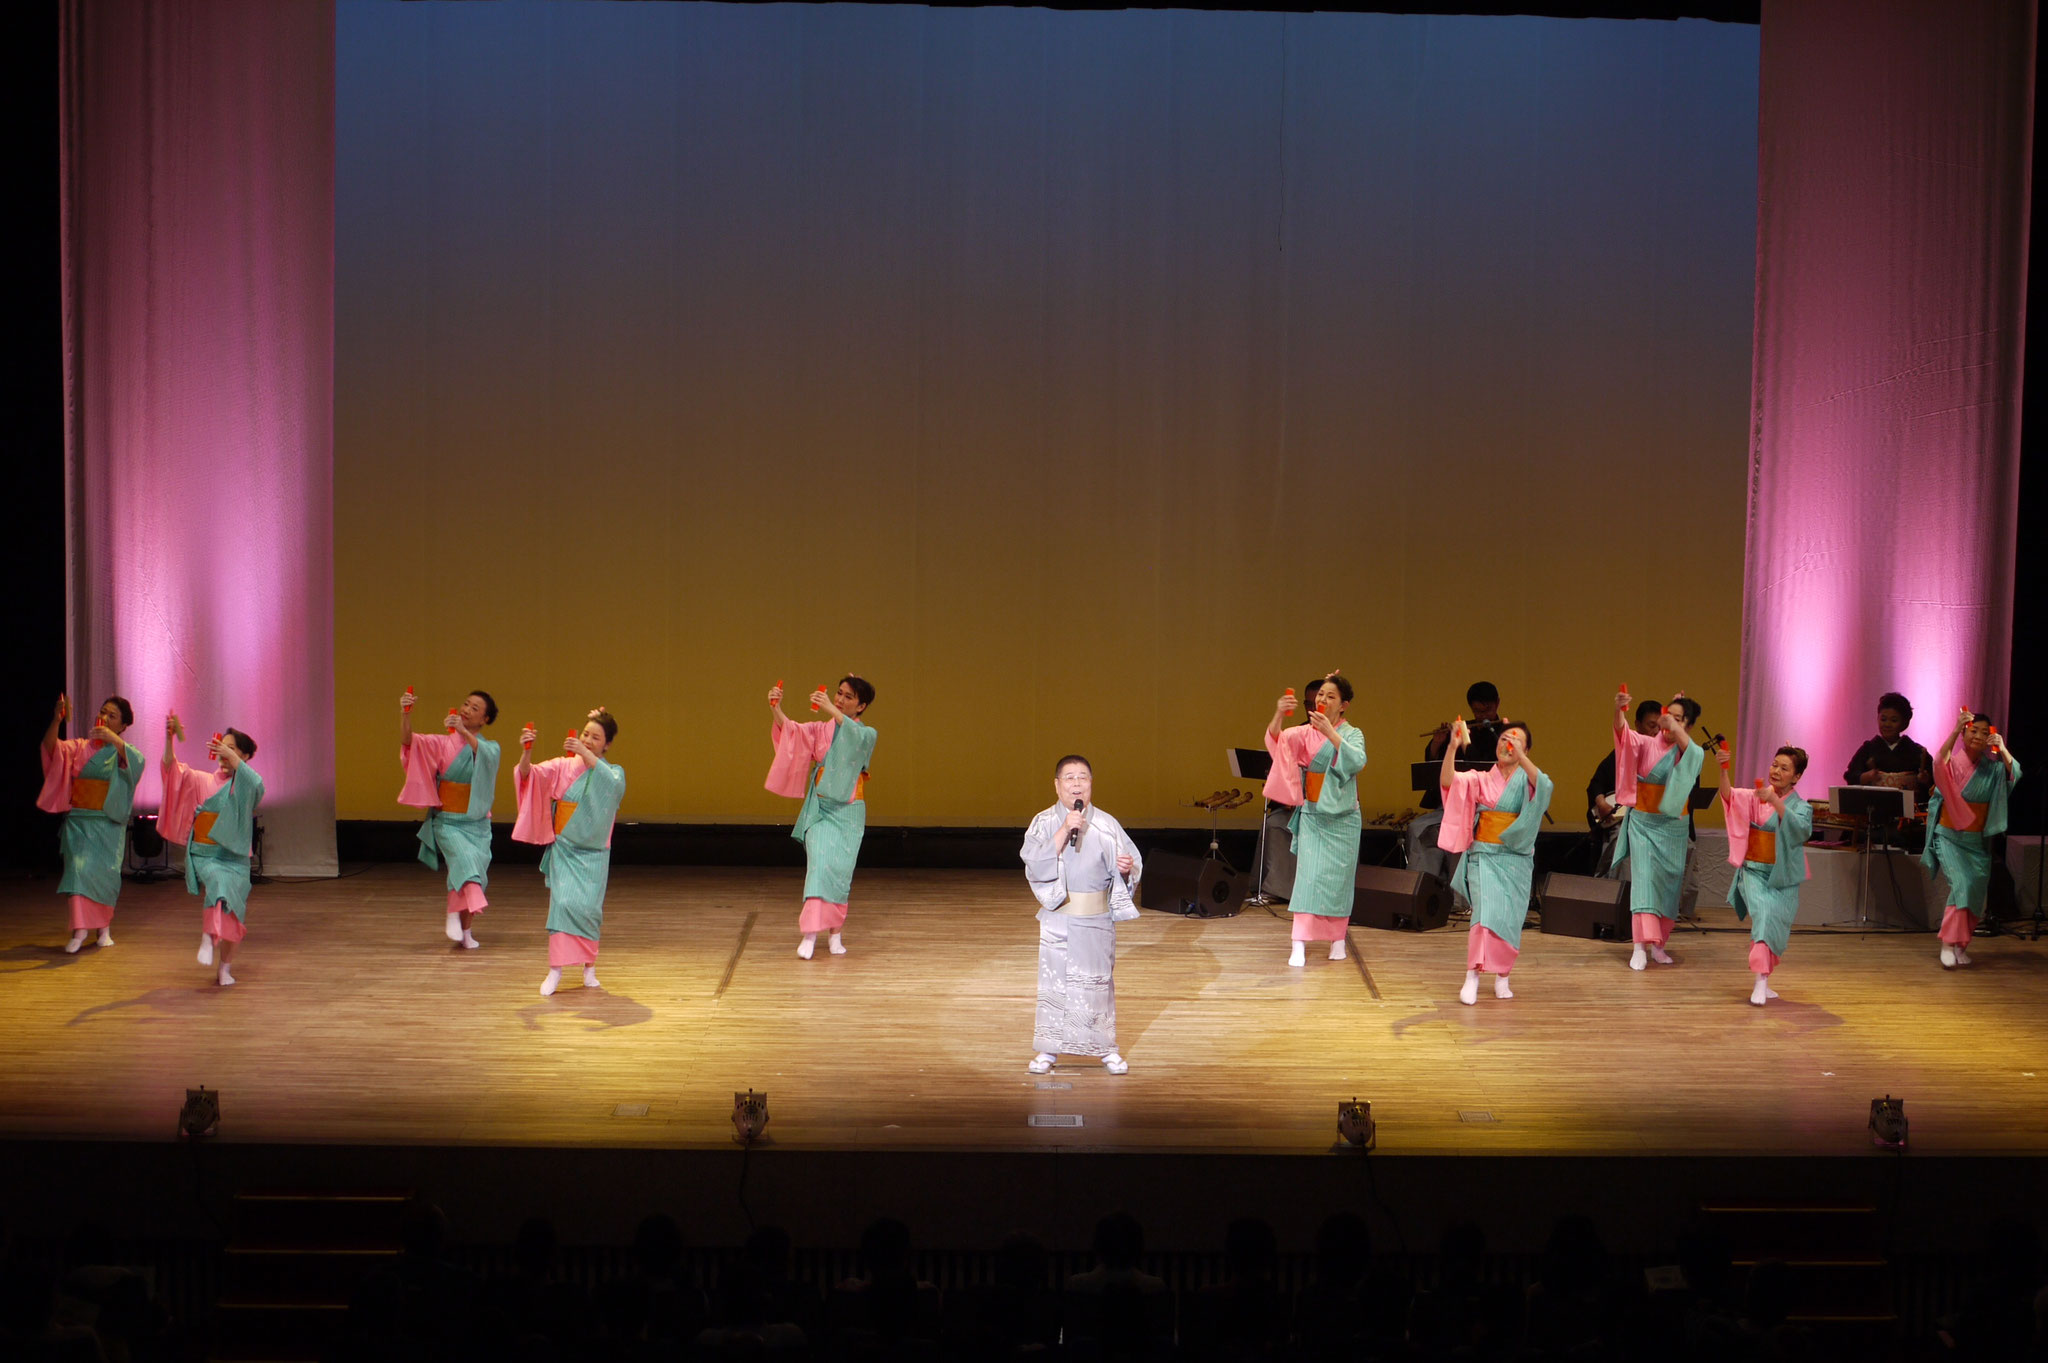 埼玉金舞グループによる「ヤッサカ踊り」